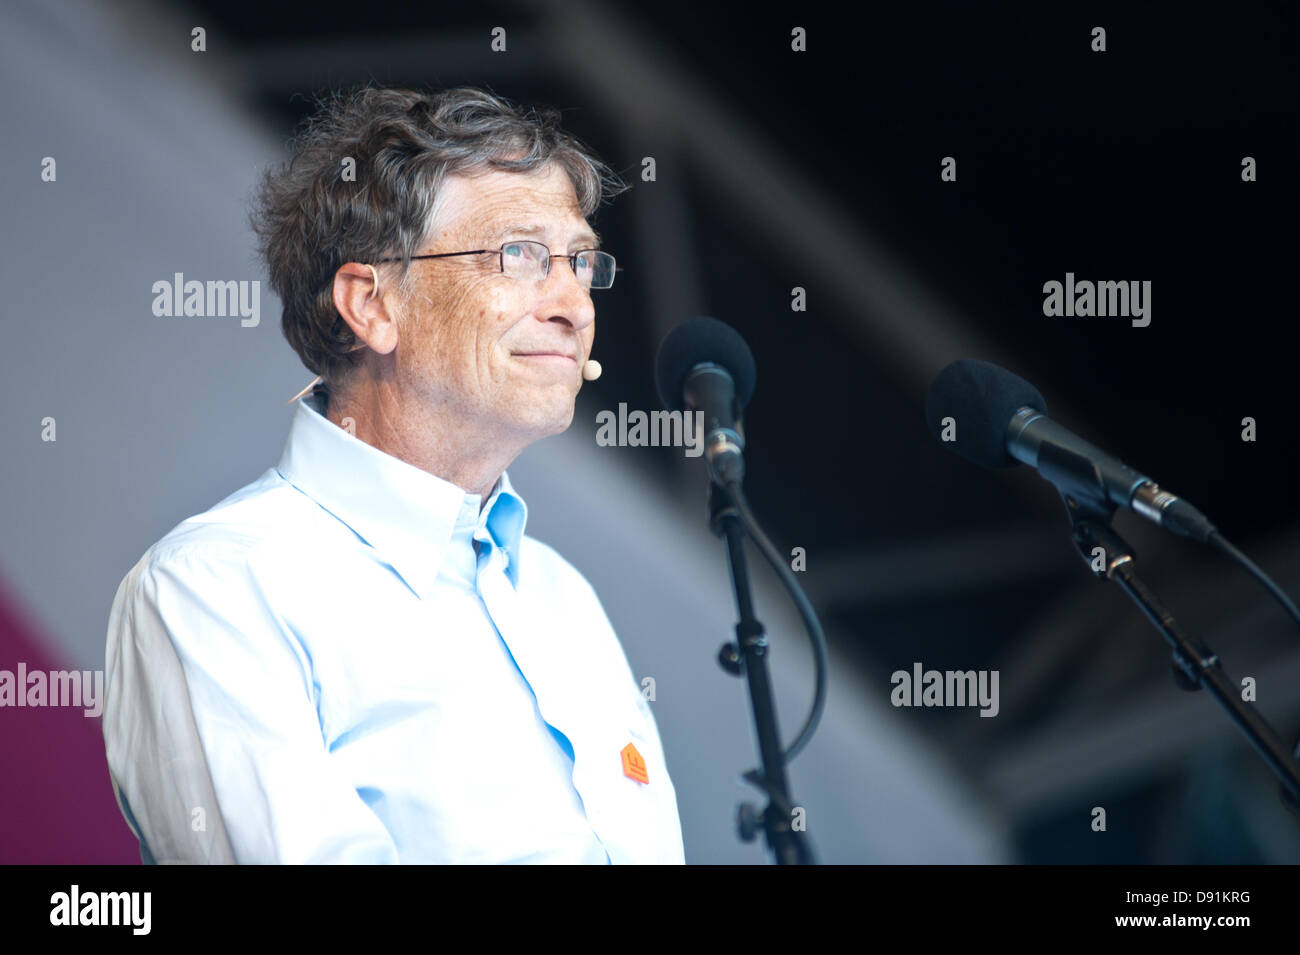 Londres, UK - 8 juin 2013 : Bill Gates s'adresse à la foule pendant le rassemblement à Hyde Park, l'arraisonnement de percée majeure dans la lutte contre la malnutrition. Credit : Piero Cruciatti/Alamy Live News Banque D'Images